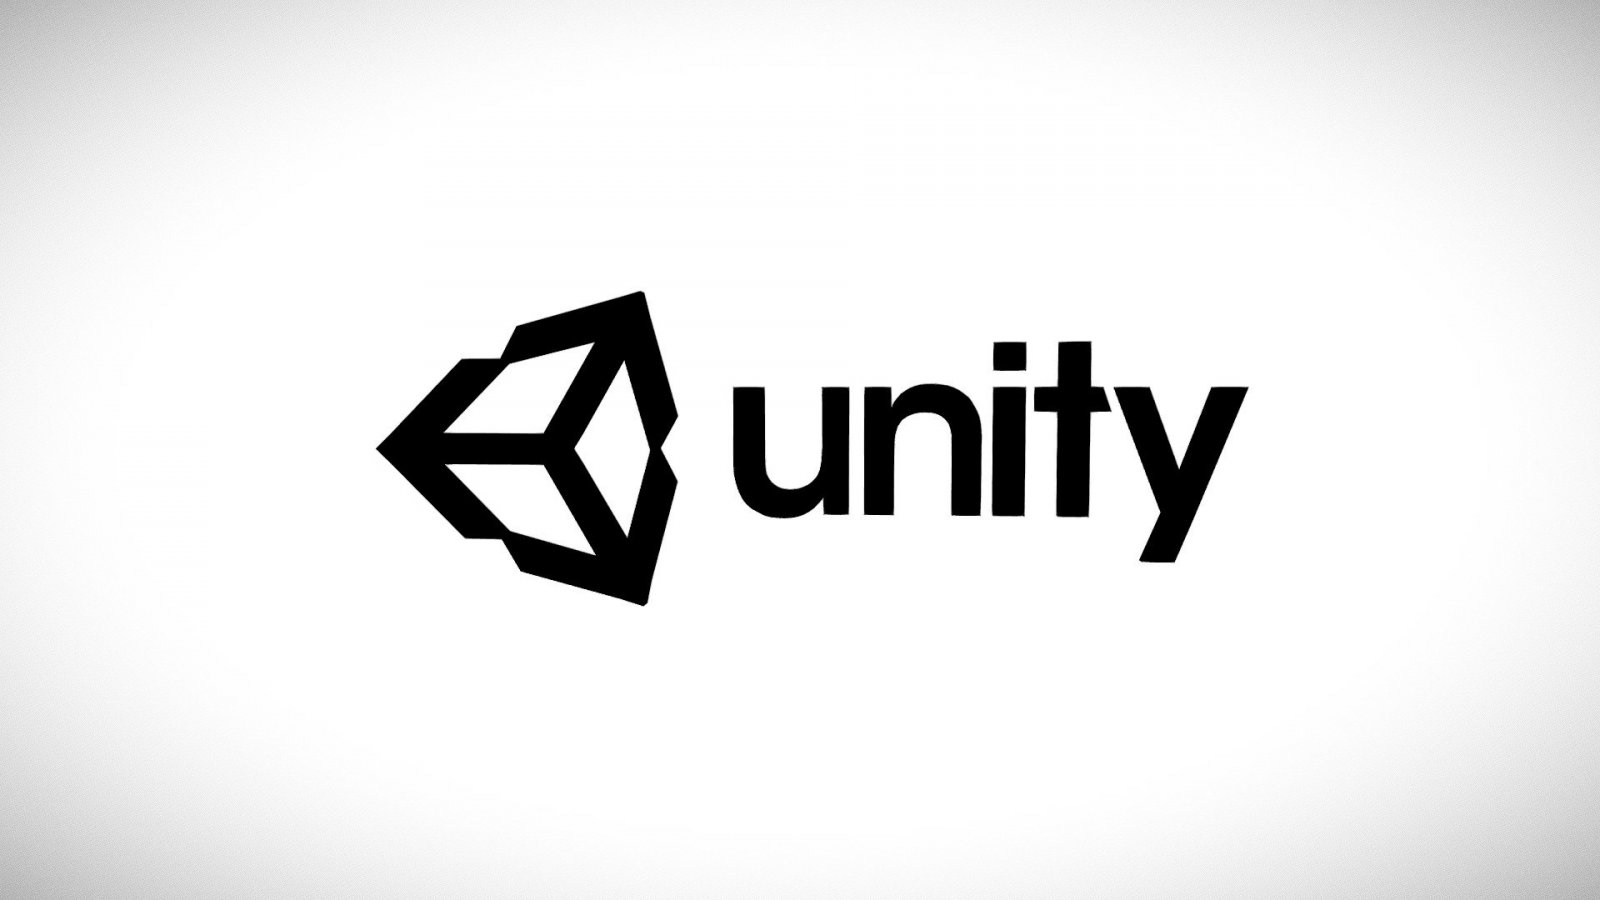 Unity è pronta ad altri tagli al personale, dopo aver già licenziato 900 persone quest'anno